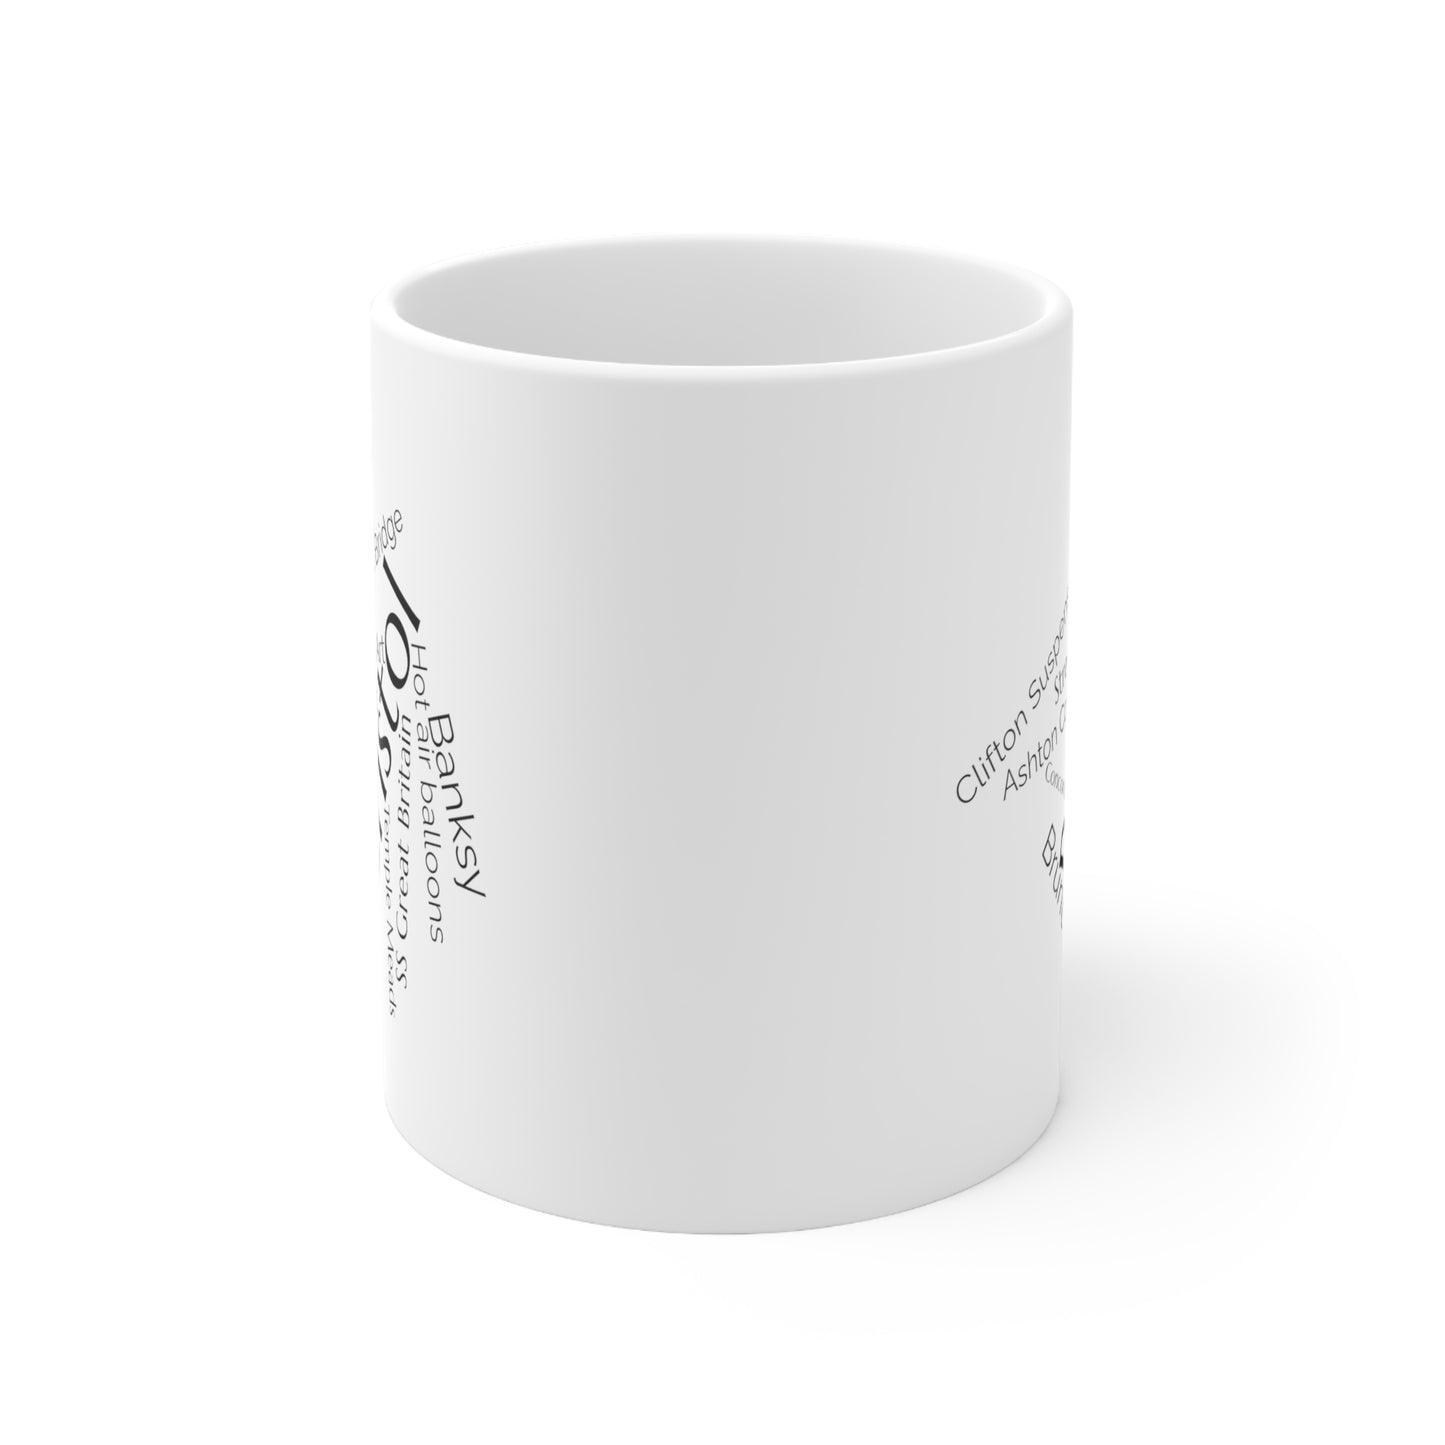 Bristol word mug, local mug, geography mug, gift, mug, coffee cup, word mug, wordcloud mug, christmas gift, birthday gift